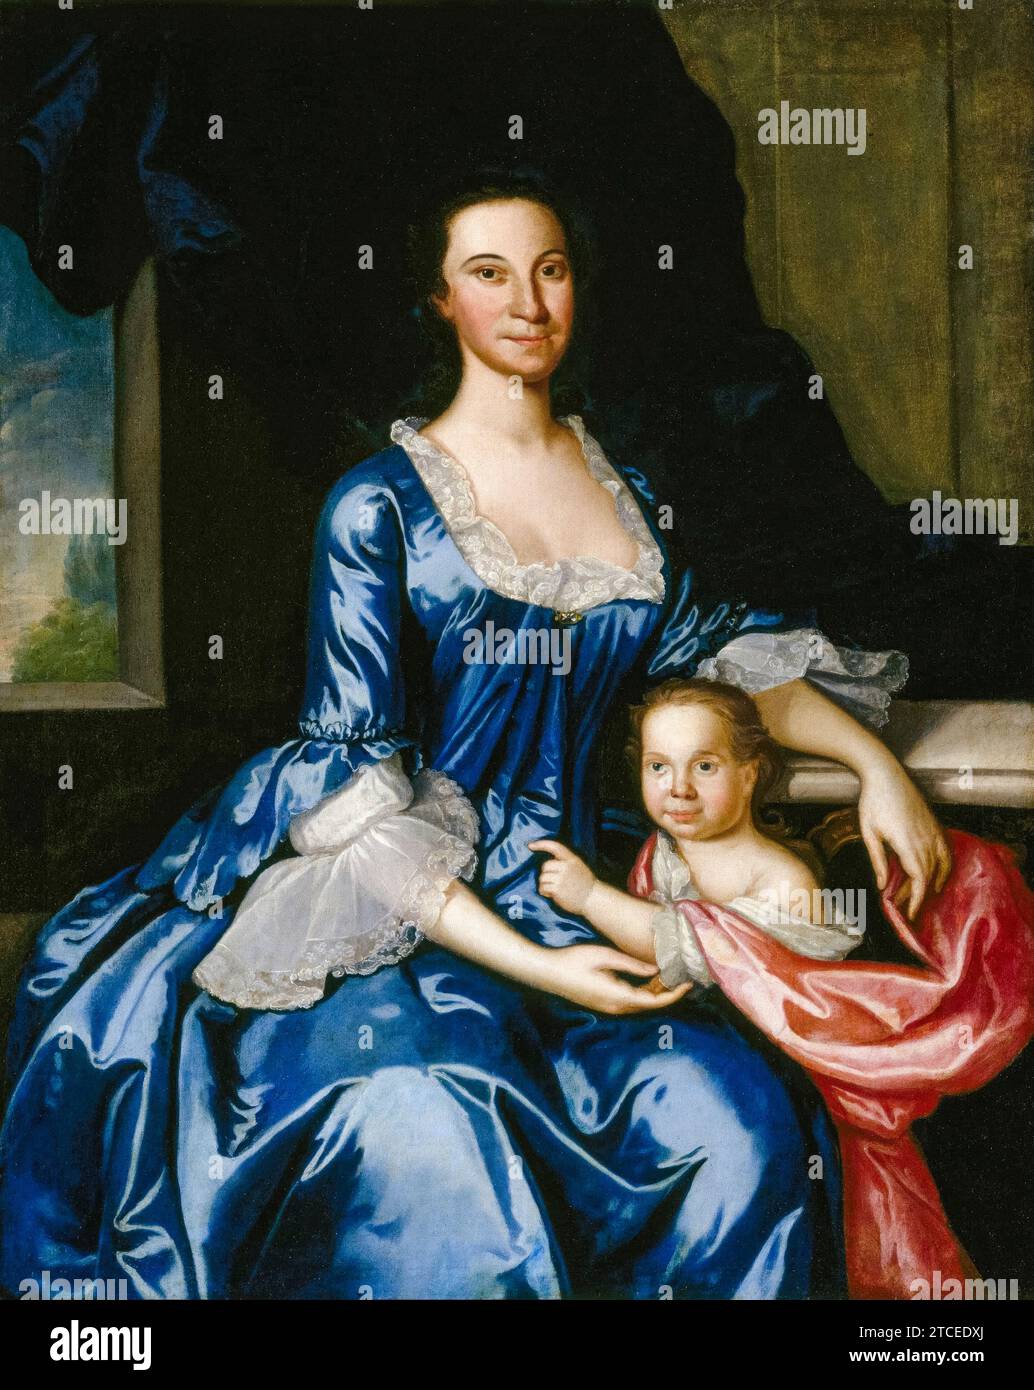 Portrait de Mme Matthew Tilghman (Anna Lloyd, 1724-1794), et de sa fille, Anna Maria (1755-1843), peinture à l'huile sur toile de John Hesselius, 1757 Banque D'Images